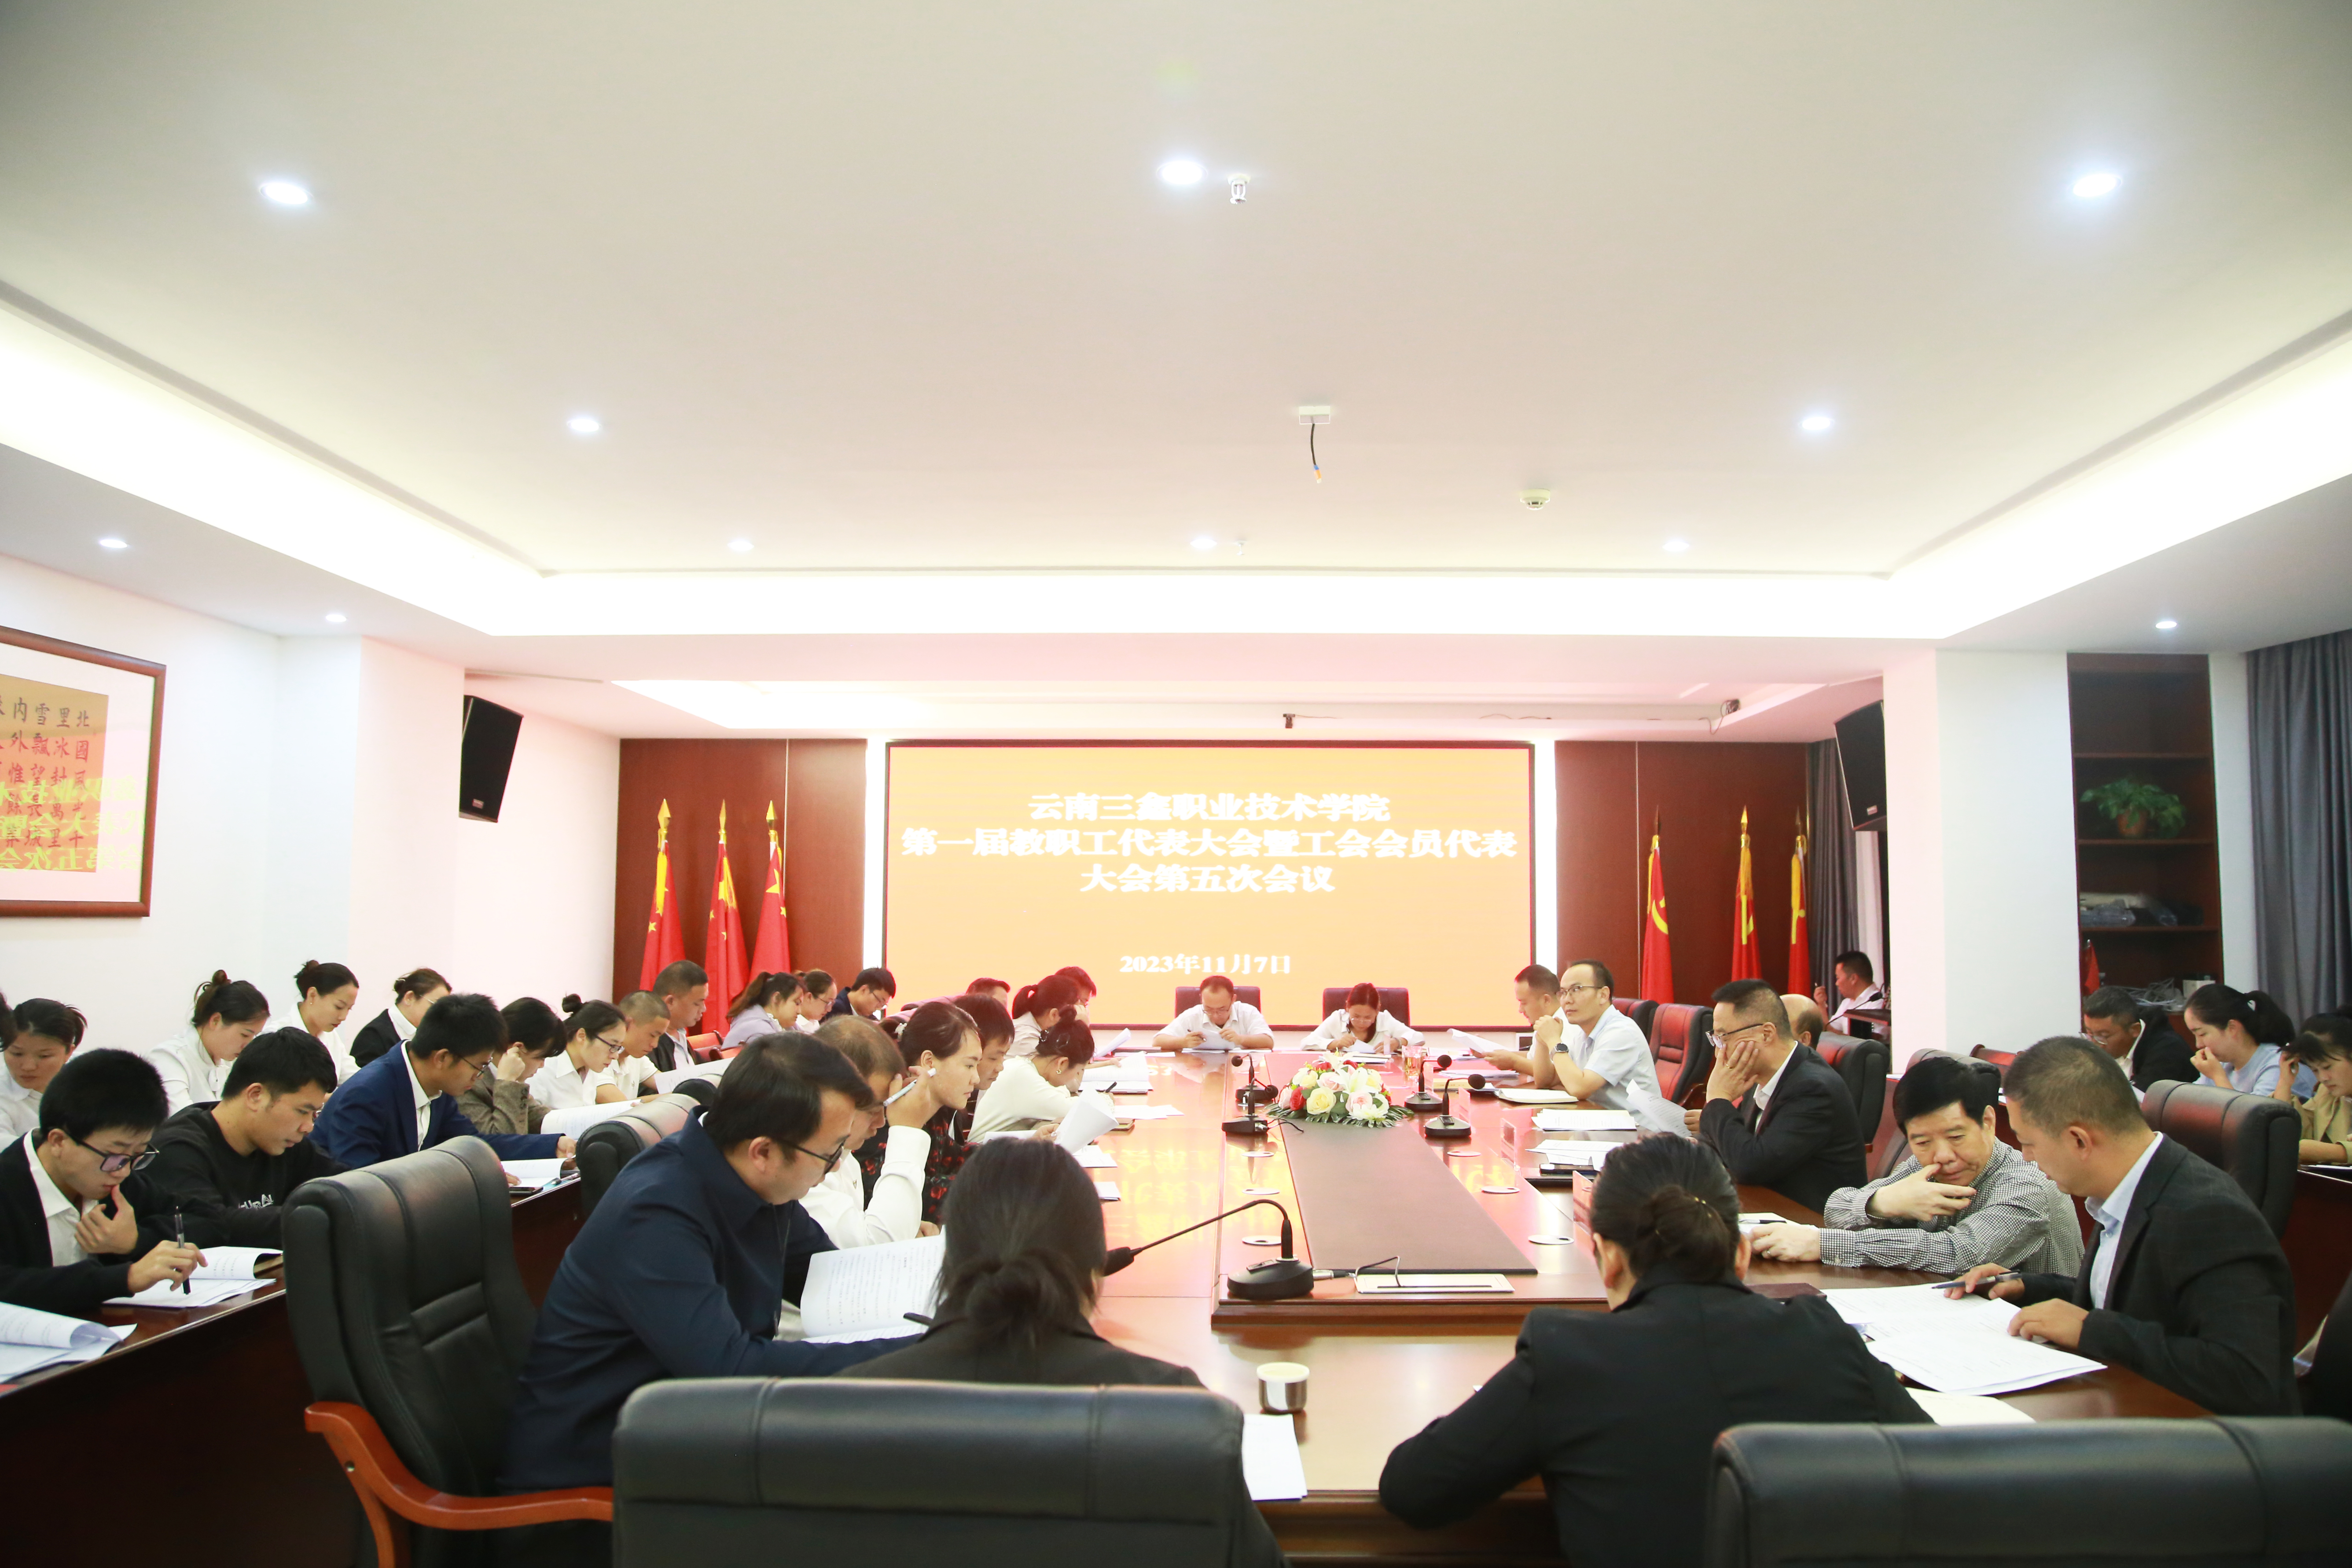 web天游线路检测中心召开第一届教职工代表大会暨工会会员代表大会第五次会议